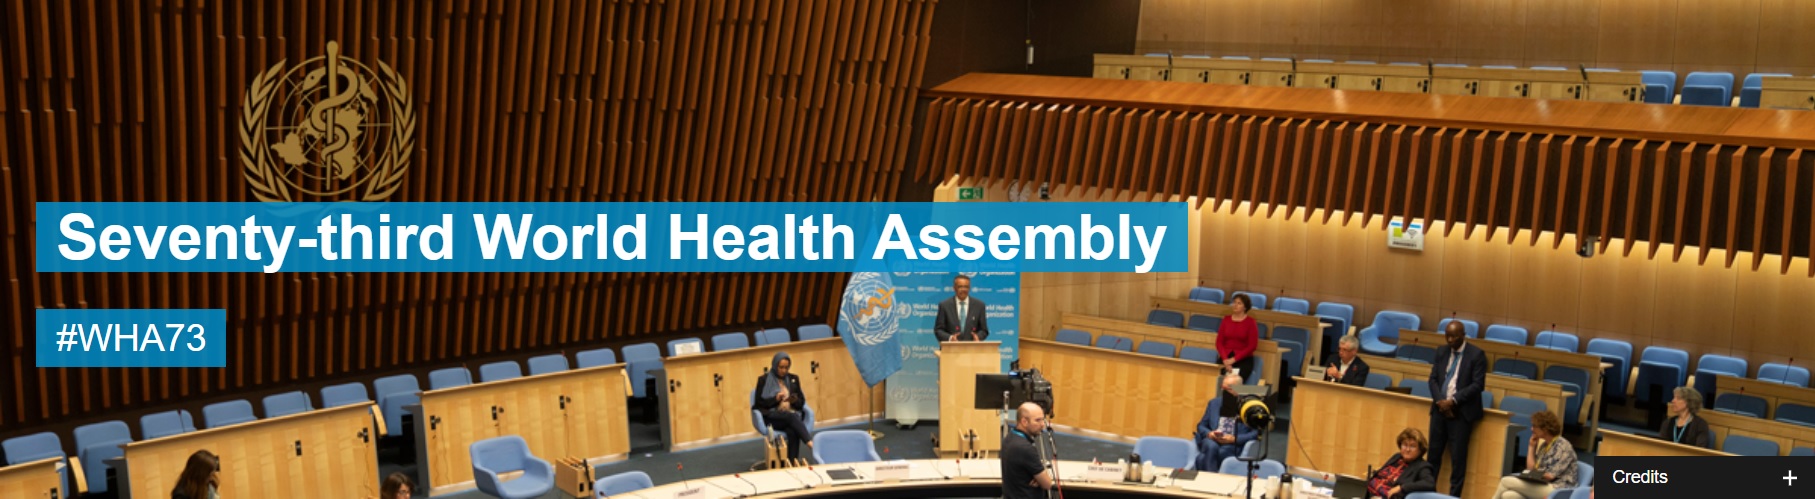 Projeto de resolução “Covid-19 Response” é aprovado na 73ª Assembleia Mundial da Saúde com a inclusão do acesso aos Cuidados Paliativos